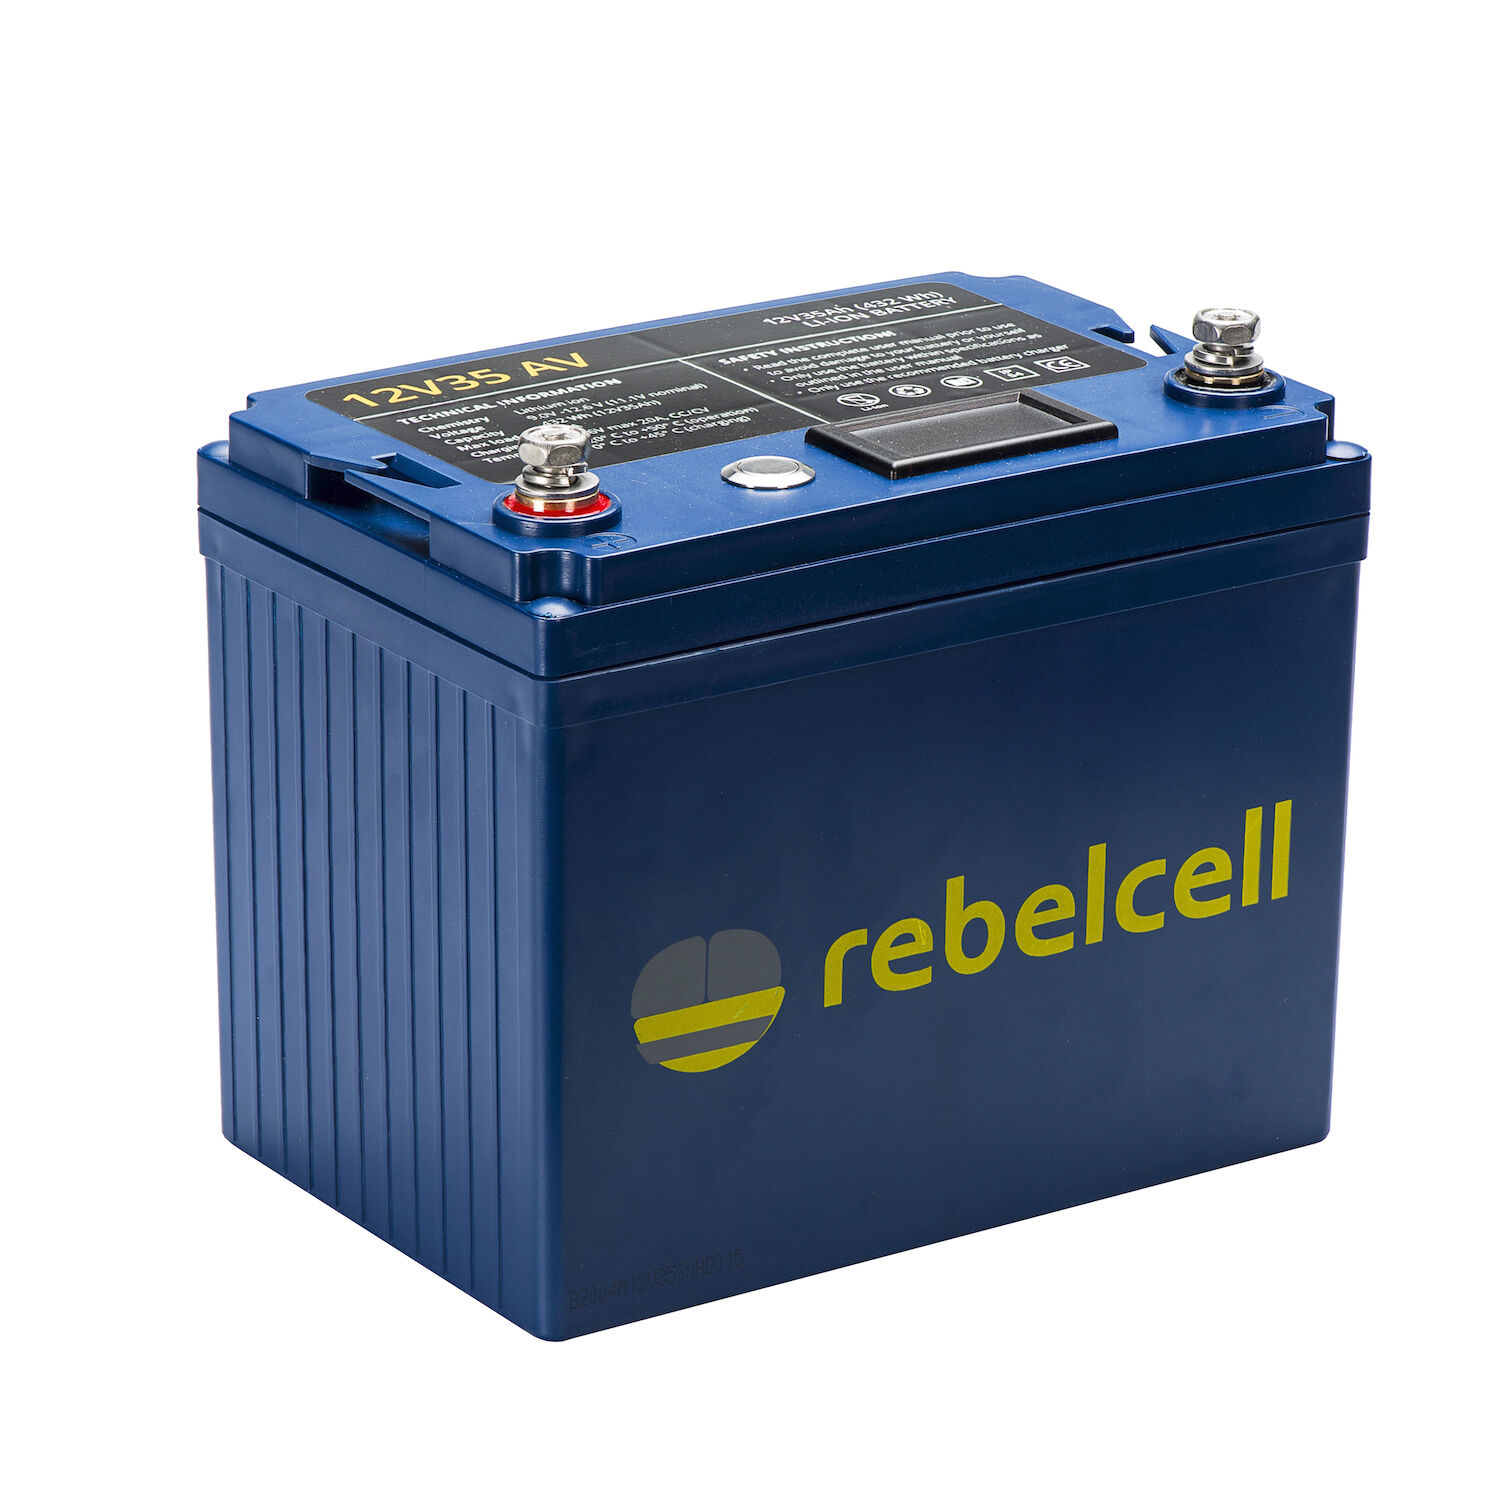 RebelCell 12V35 AV Lithium Batterie (12V 35Ah) 432Wh